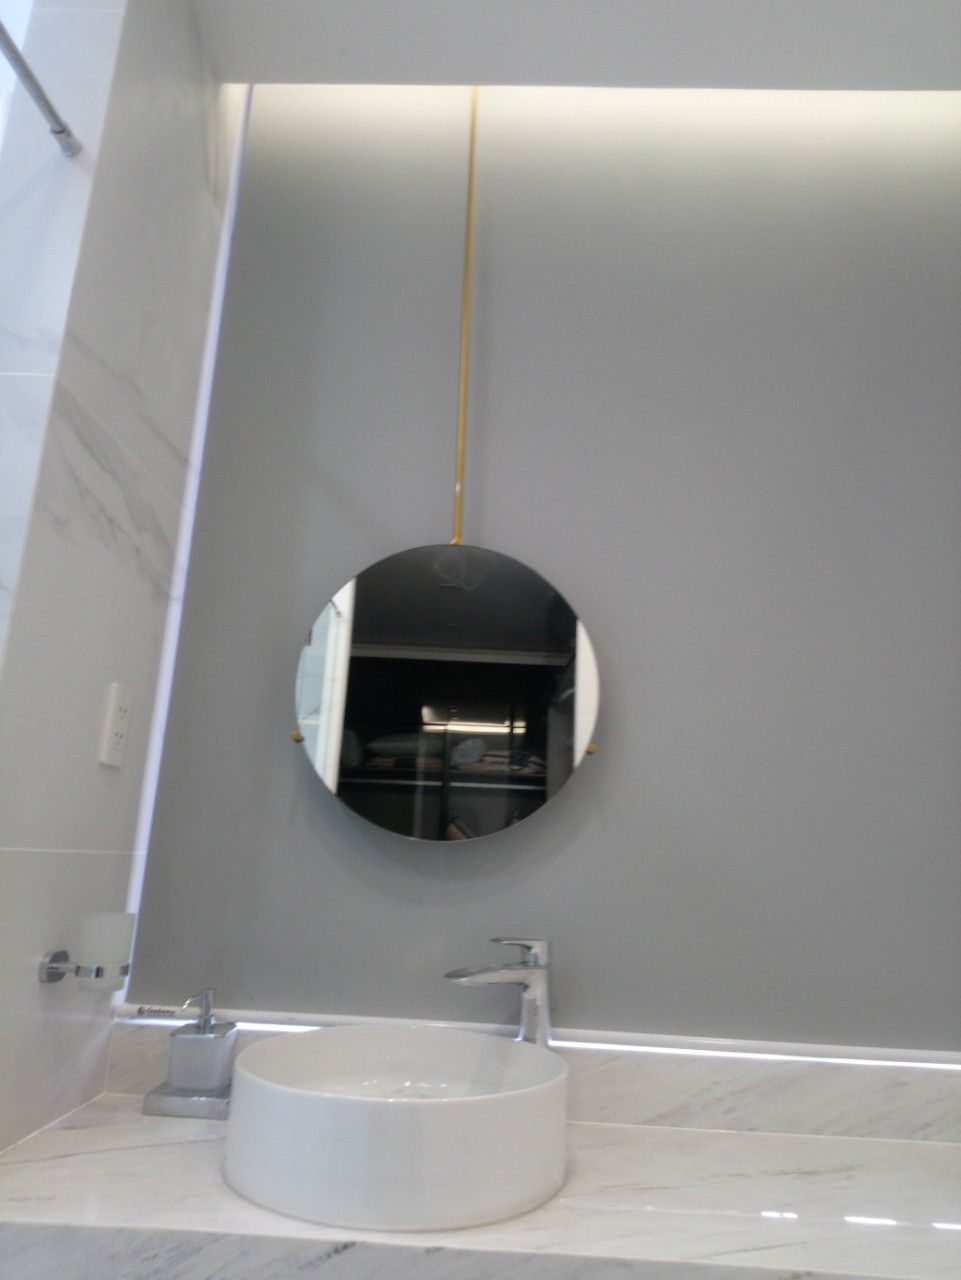 Kinh nghiệm mua gương treo tường phòng tắm phù hợp nhất